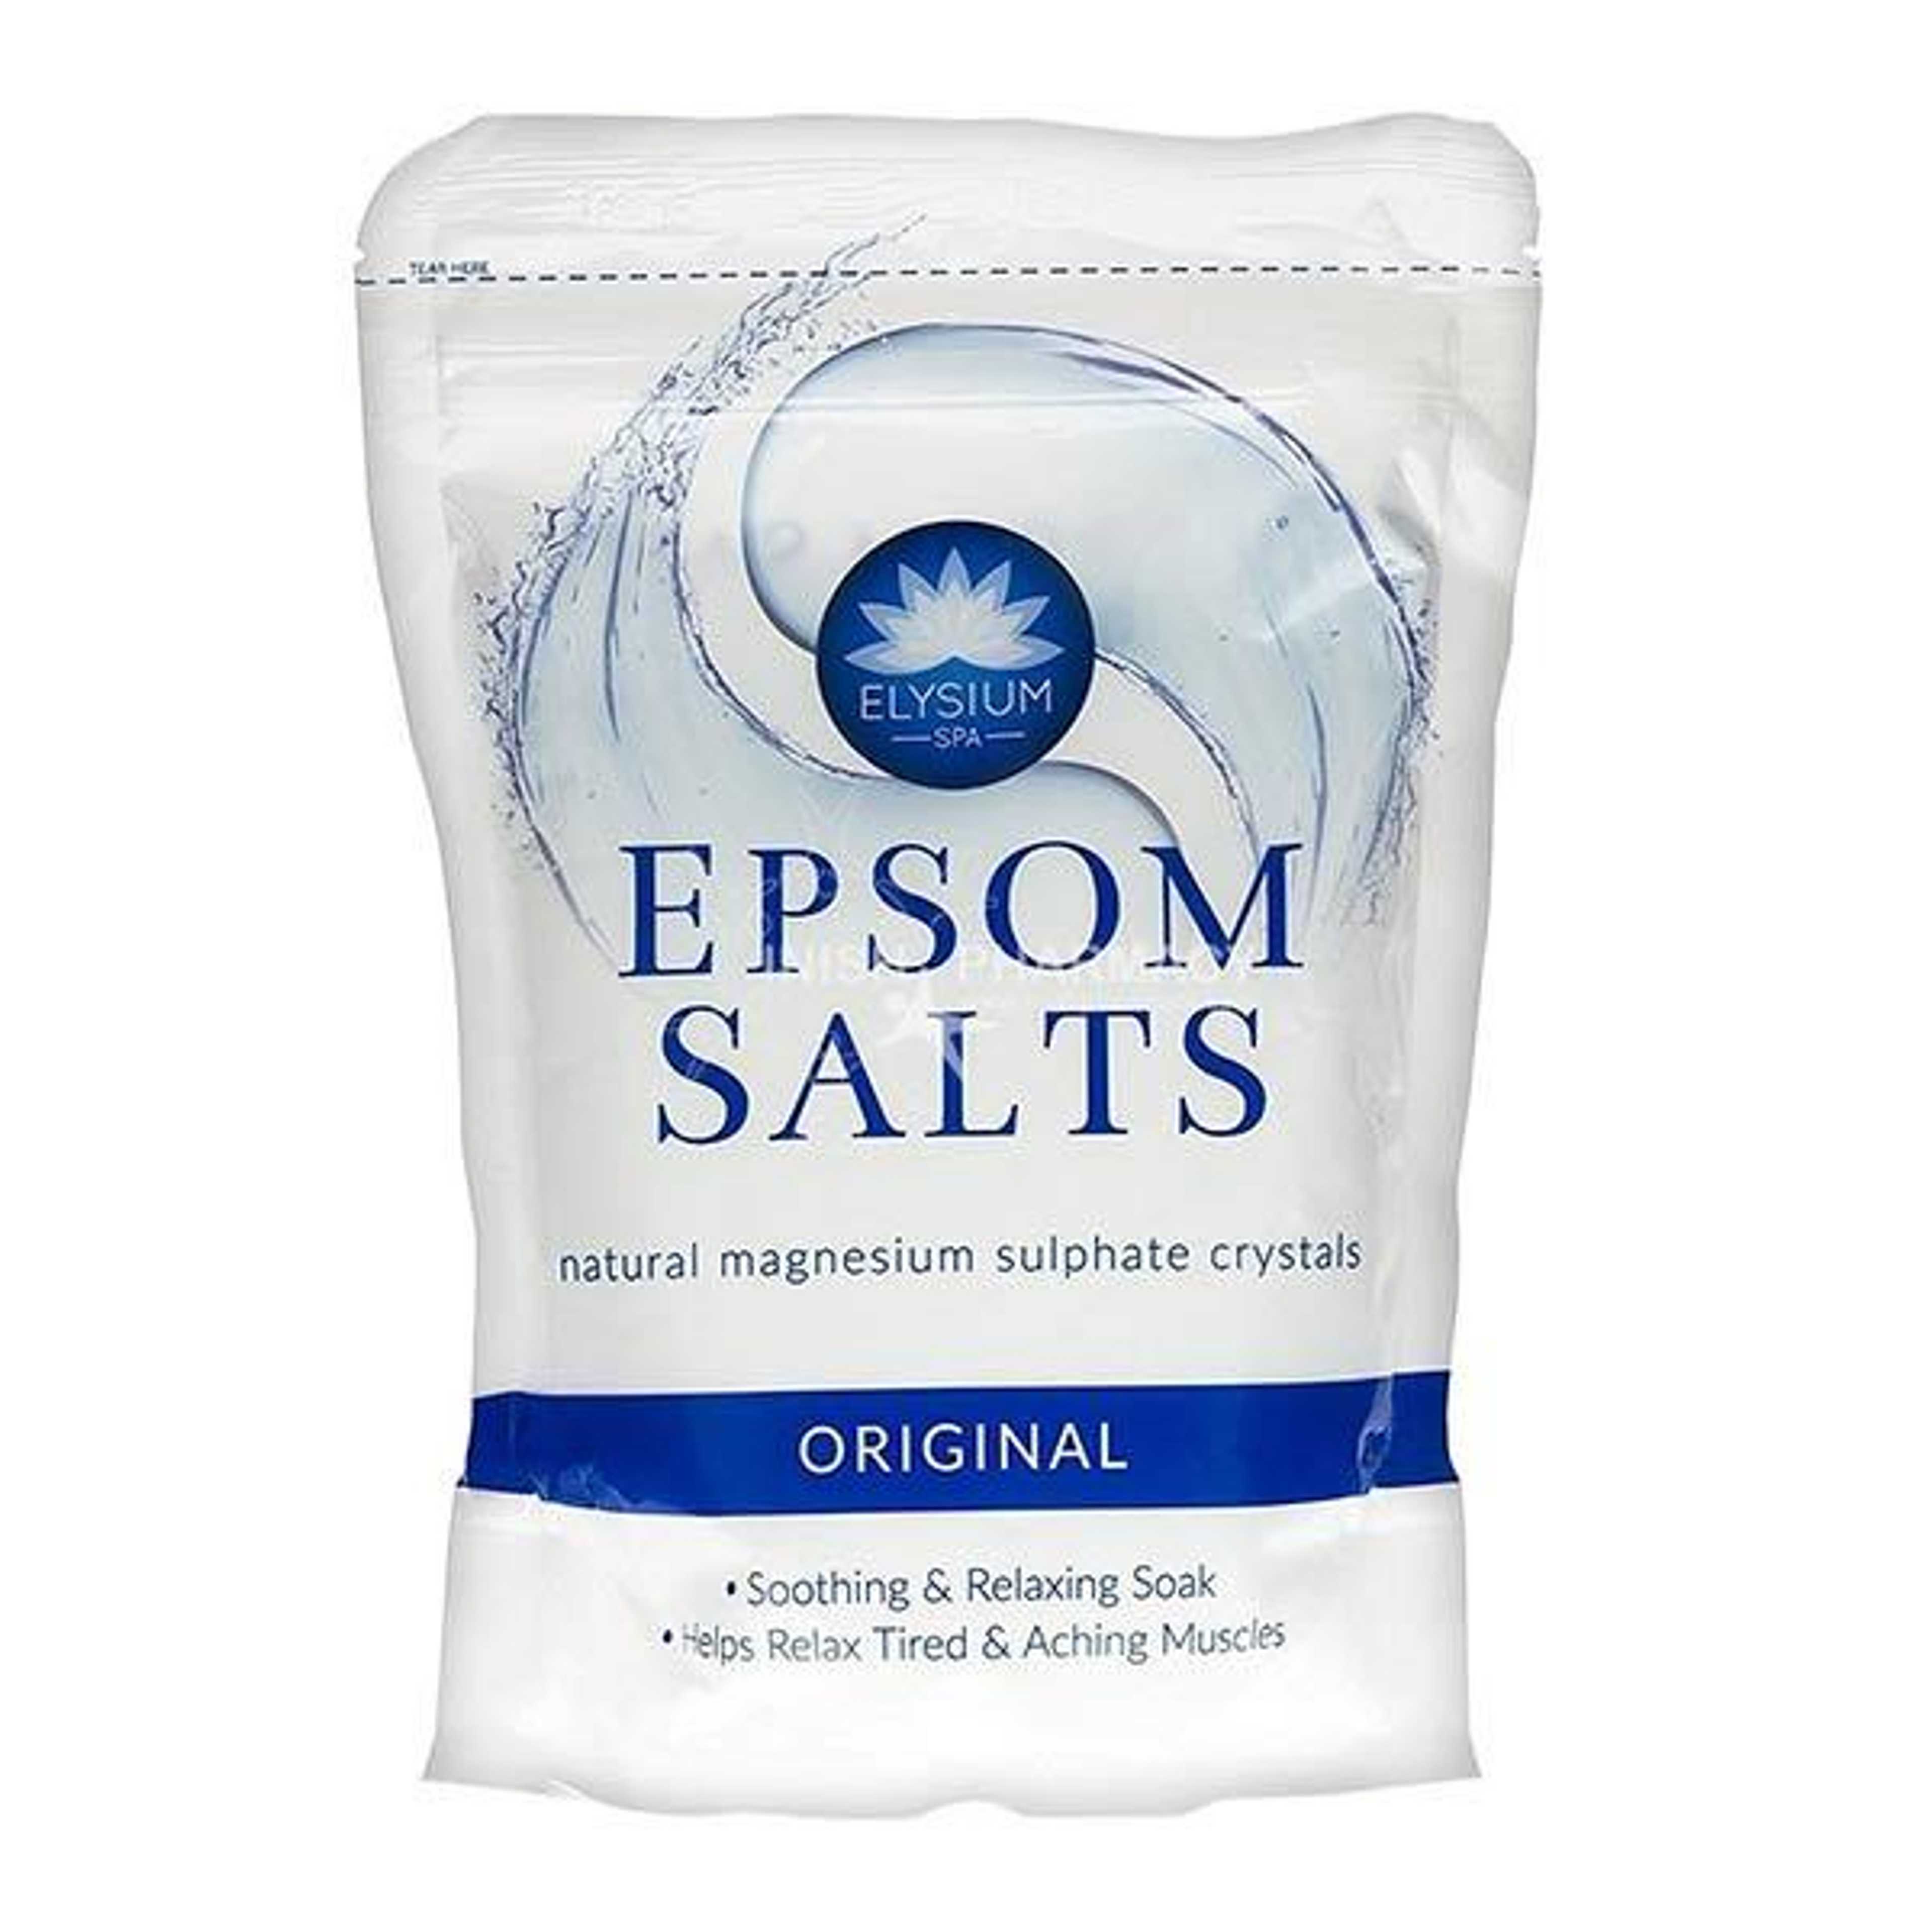 ELYSIUM EPSOM SALTS ORIGINAL 450G